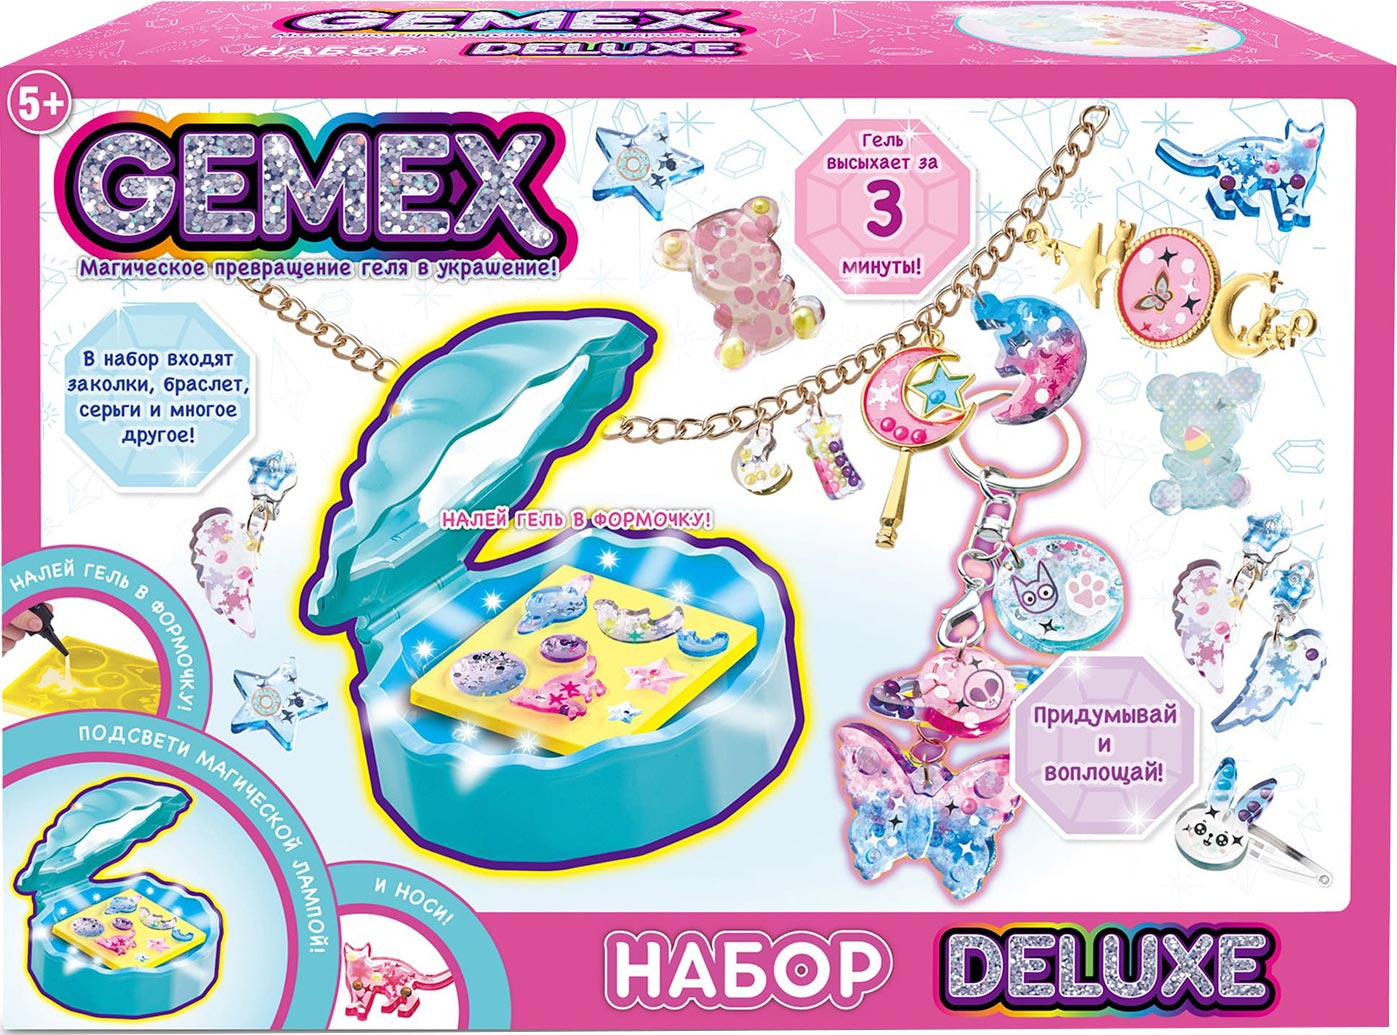 Gemex Набор Deluxe для создания украшений и аксессуаров — купить в